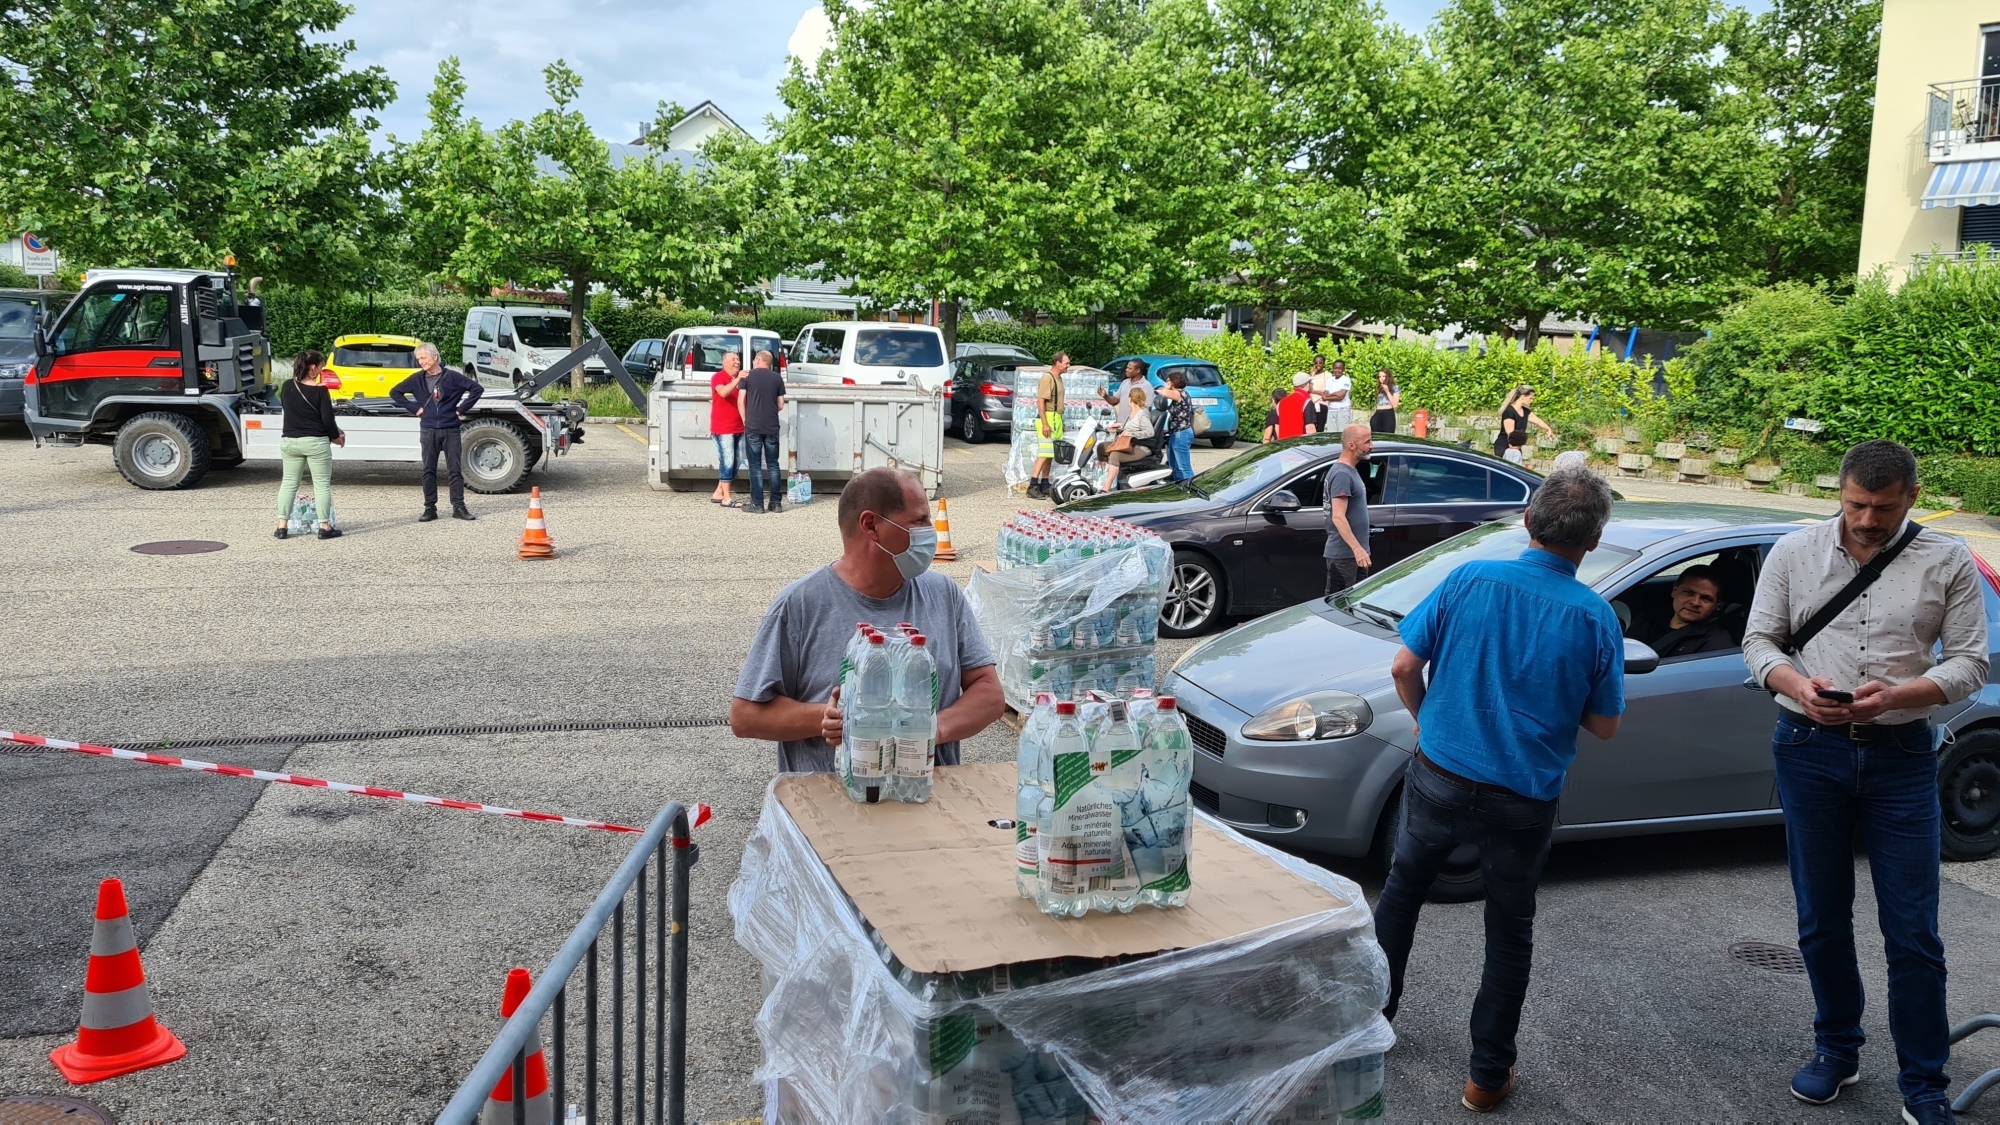 Plus de 3600 packs de six bouteilles d’un litre et demi ont été distribués durant les cinq jours qu’a duré l’incident.